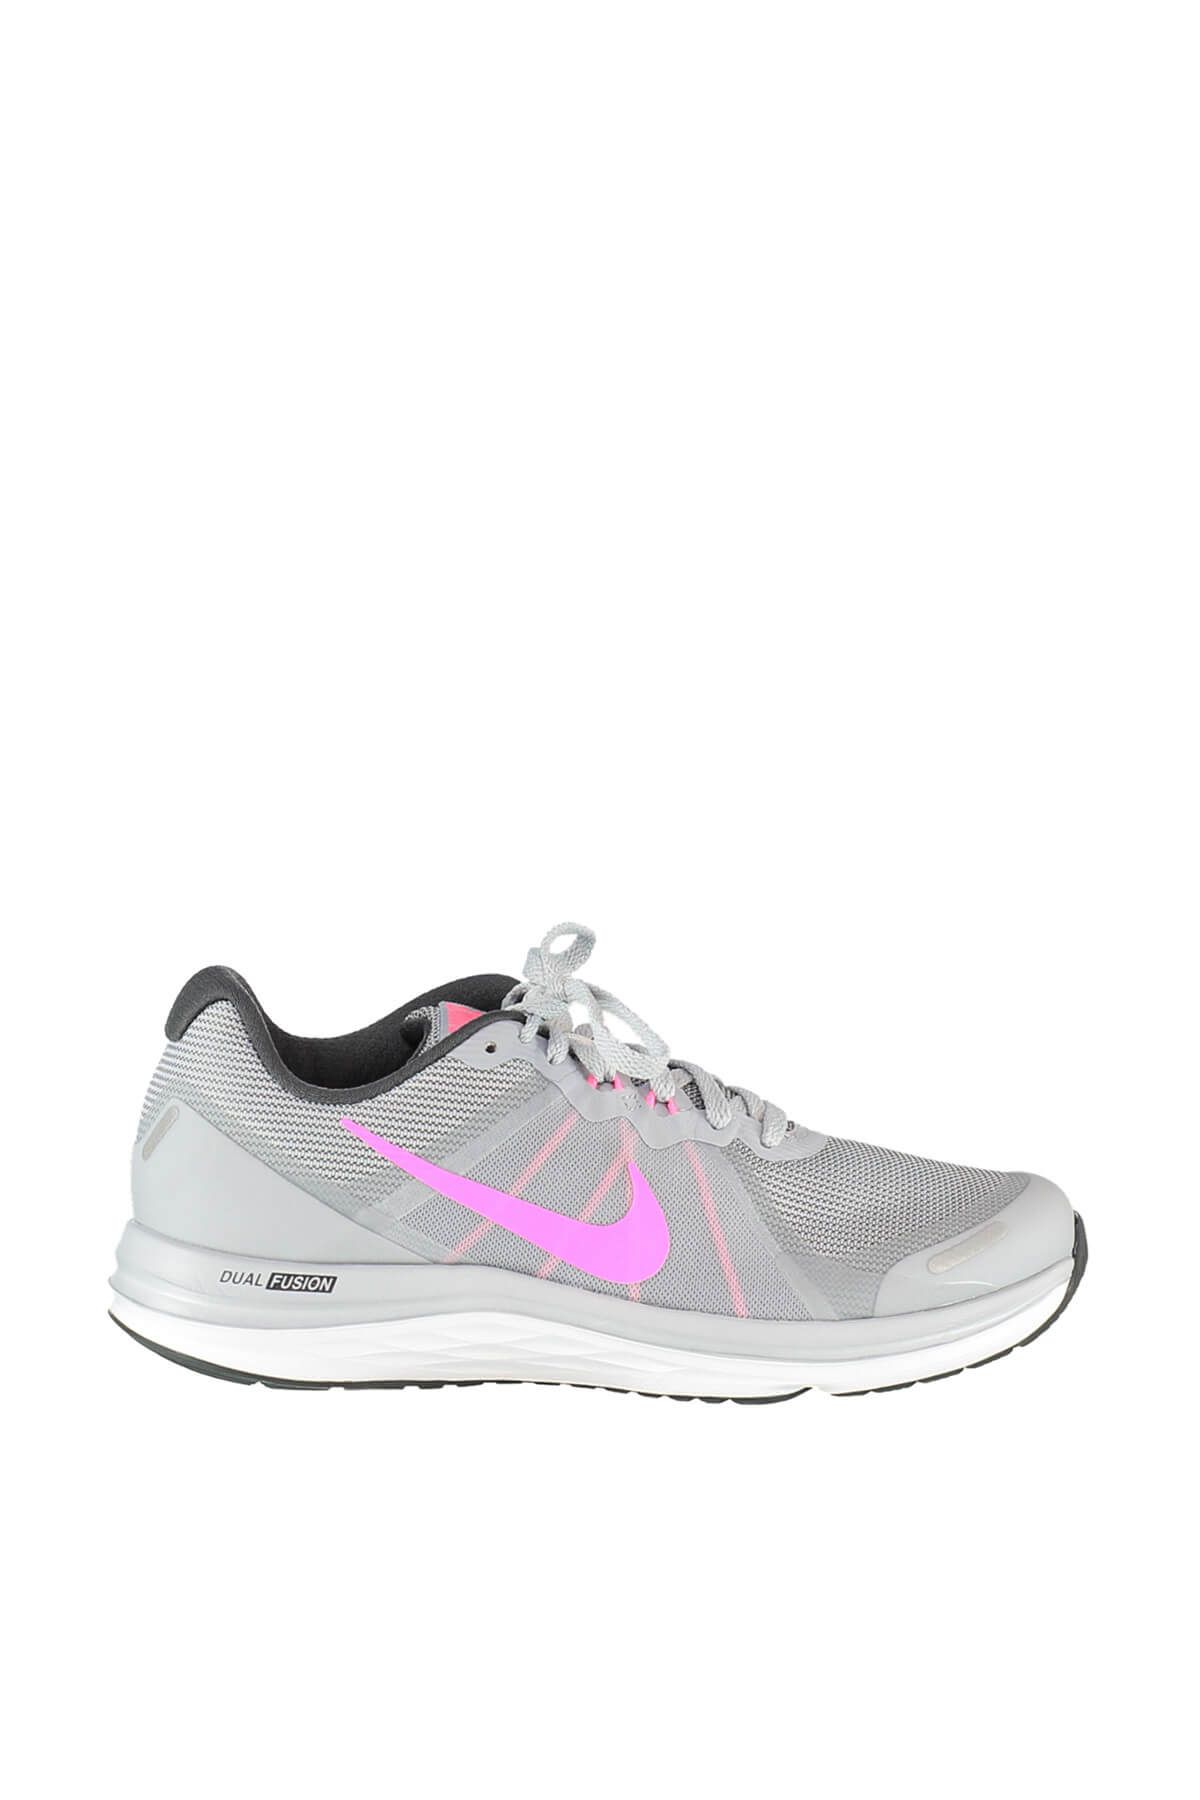 Nike Kadın Koşu Ayakkabı - Wmns Dual Fusion X 2 - 819318-007